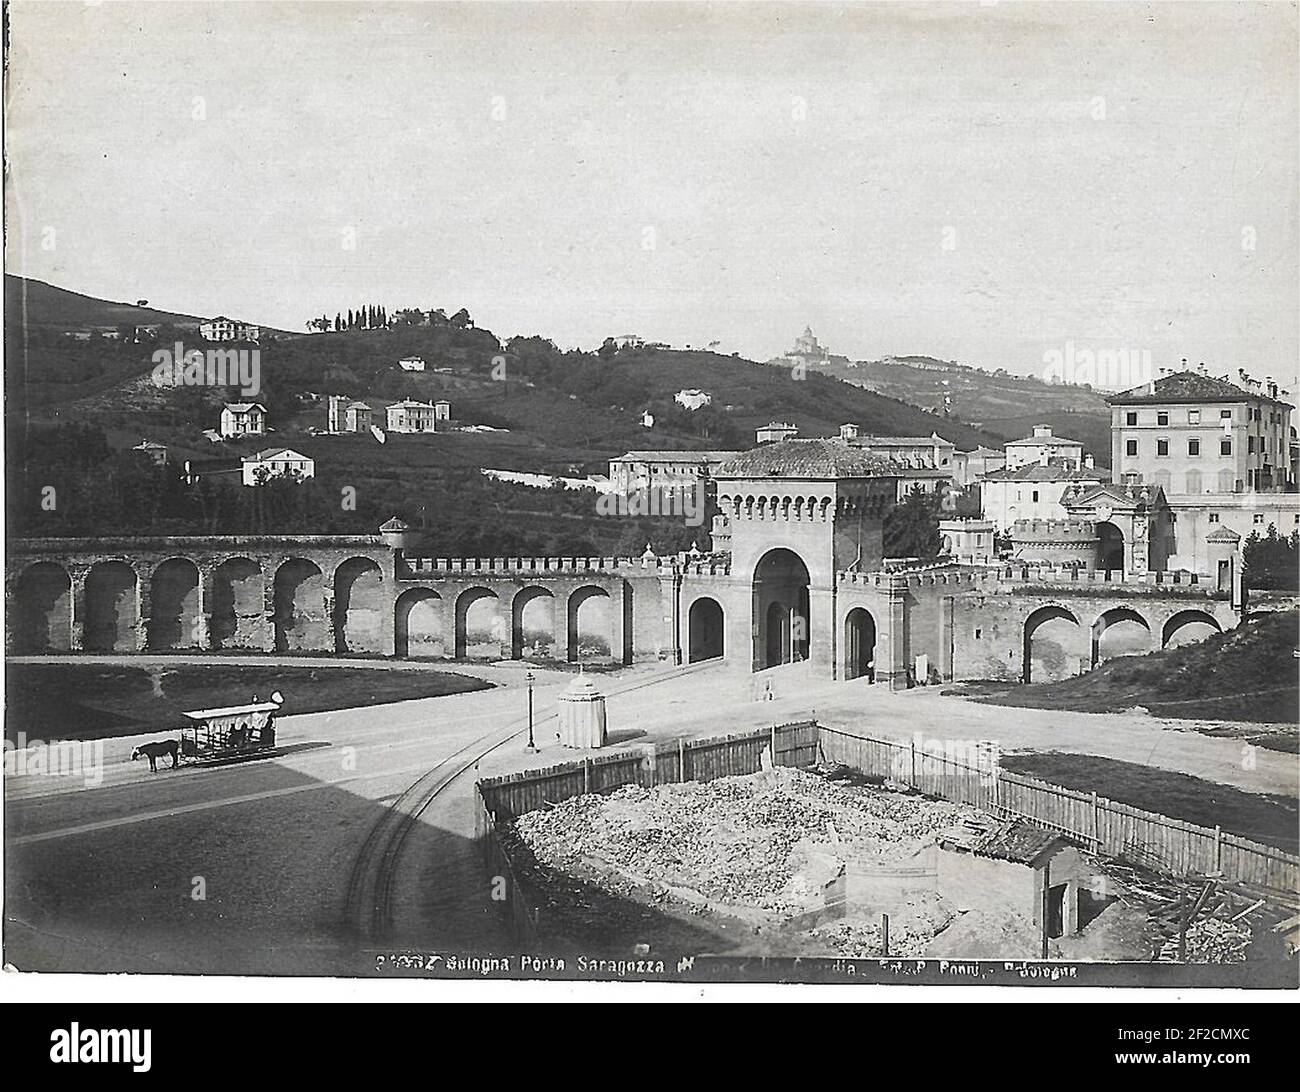 Poppi, Pietro (1833-1914) - n-21033-Bologna-Porta-Saragozza. Stock Photo